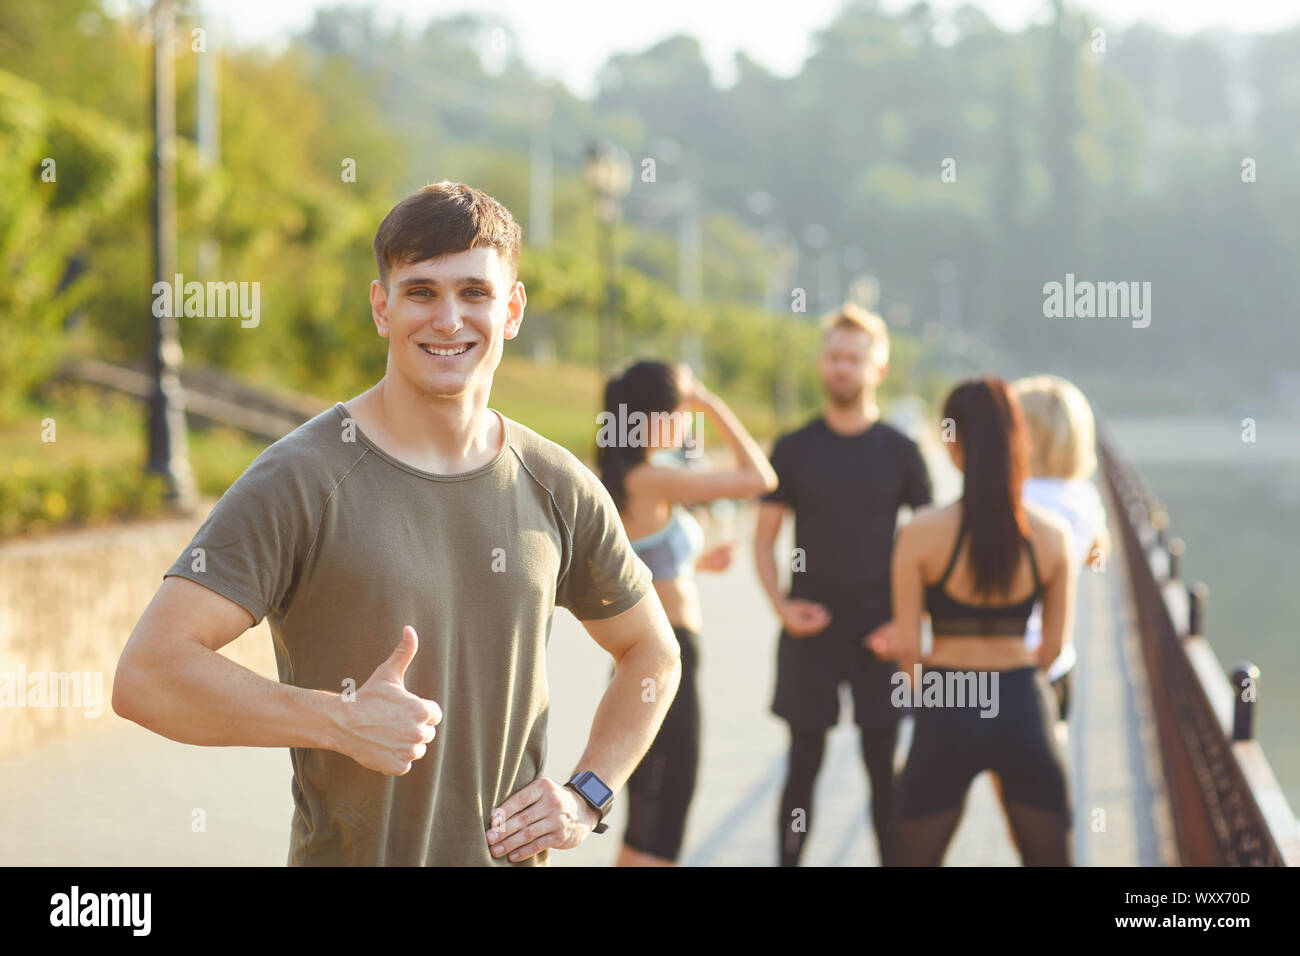 Sportlicher Kerl Lächeln auf dem Hintergrund der Freunde Athleten im Park Stockfoto